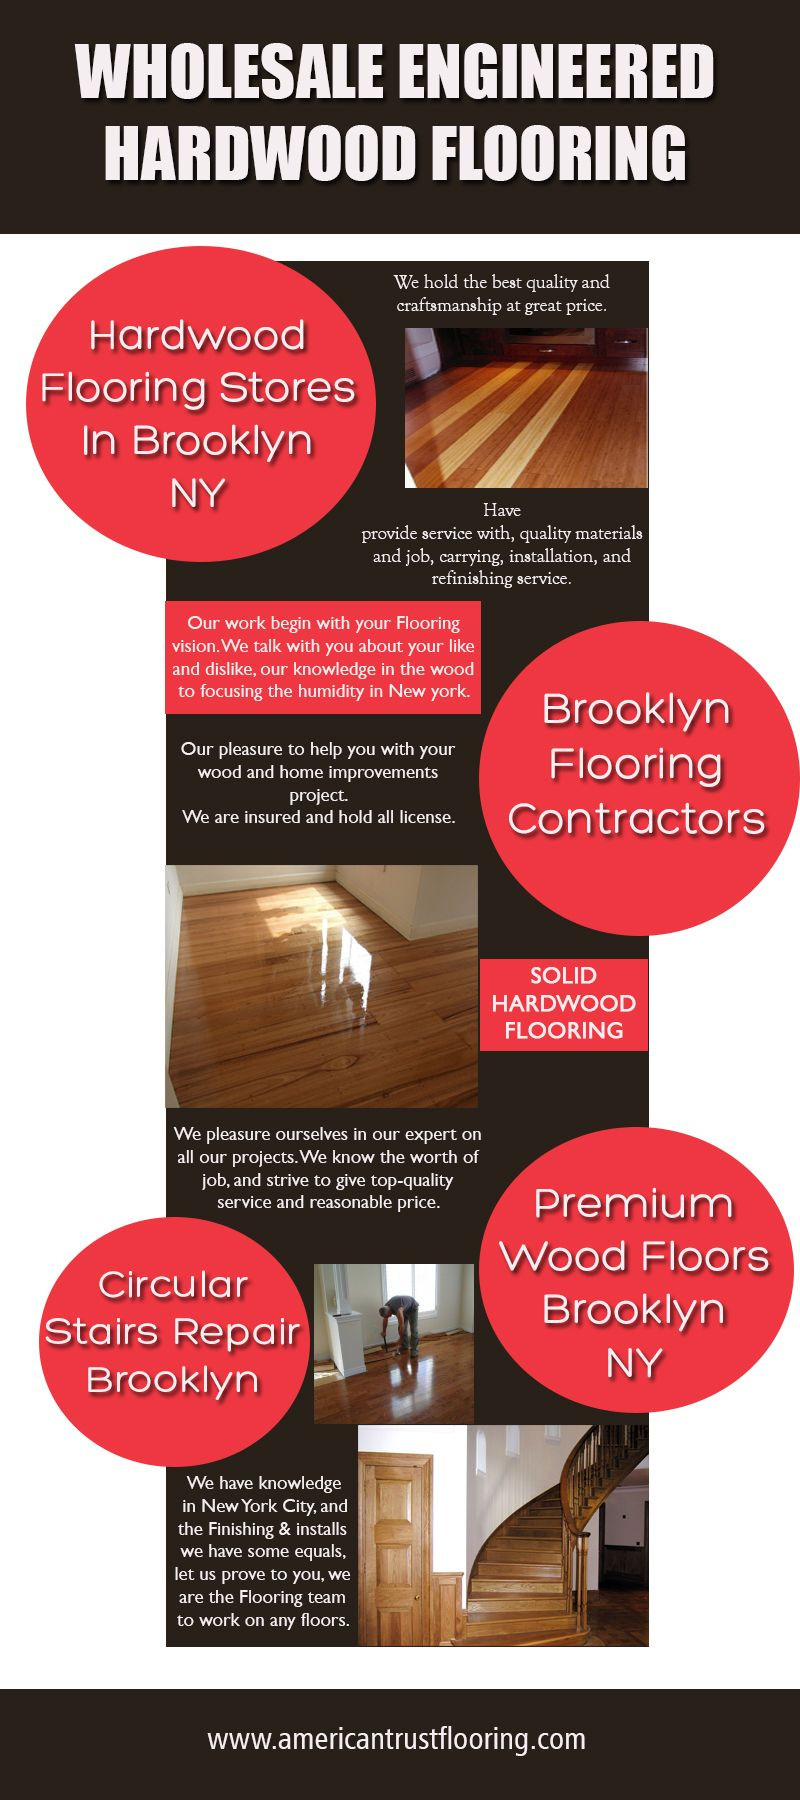 16 Perfect Hardwood Flooring Stores In Brooklyn Ny 2024 free download hardwood flooring stores in brooklyn ny of wood floor nyc hardwood floorny on pinterest throughout 65de85ddf512aaf94729c5346e3baf94